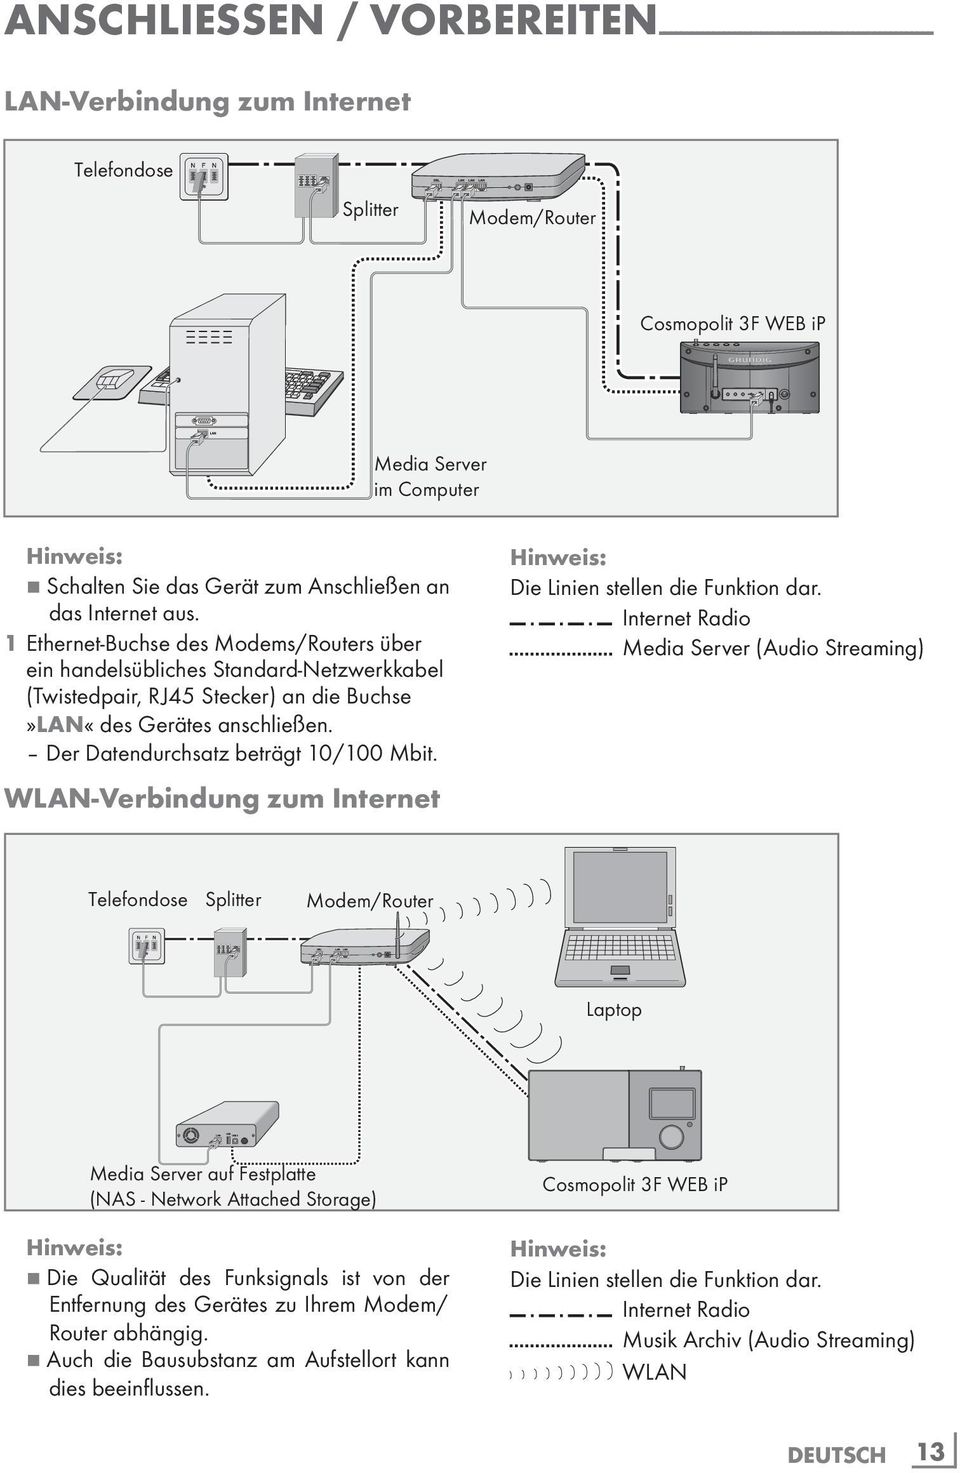 1 Ethernet-Buchse des Modems/Routers über ein handelsübliches Standard-Netzwerkkabel (Twistedpair, RJ45 Stecker) an die Buchse»LAN«des Gerätes anschließen. Der Datendurchsatz beträgt 10/100 Mbit.